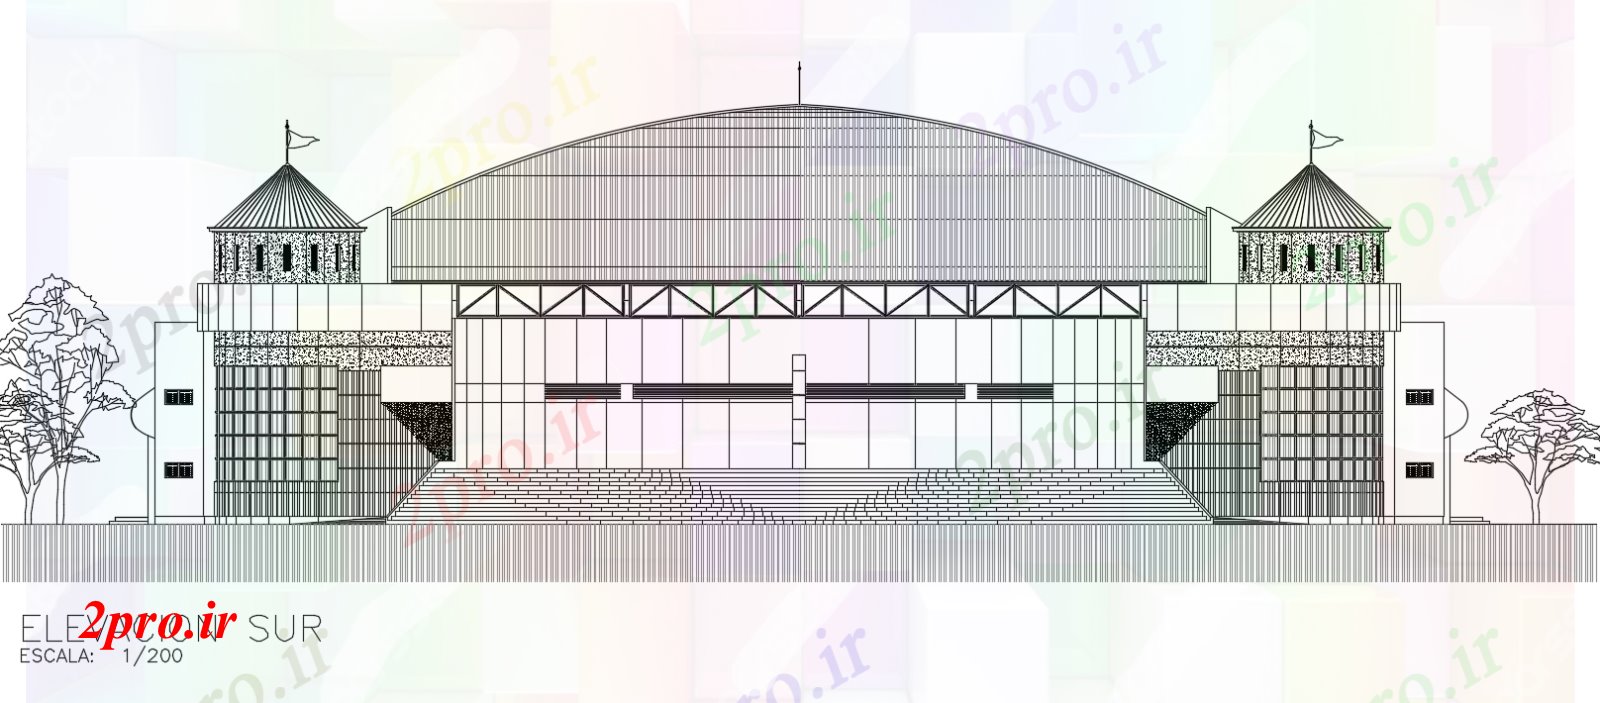 دانلود نقشه ورزشگاه ، سالن ورزش ، باشگاه بسکتبال ورزشگاه جنوبی نما  (کد167028)